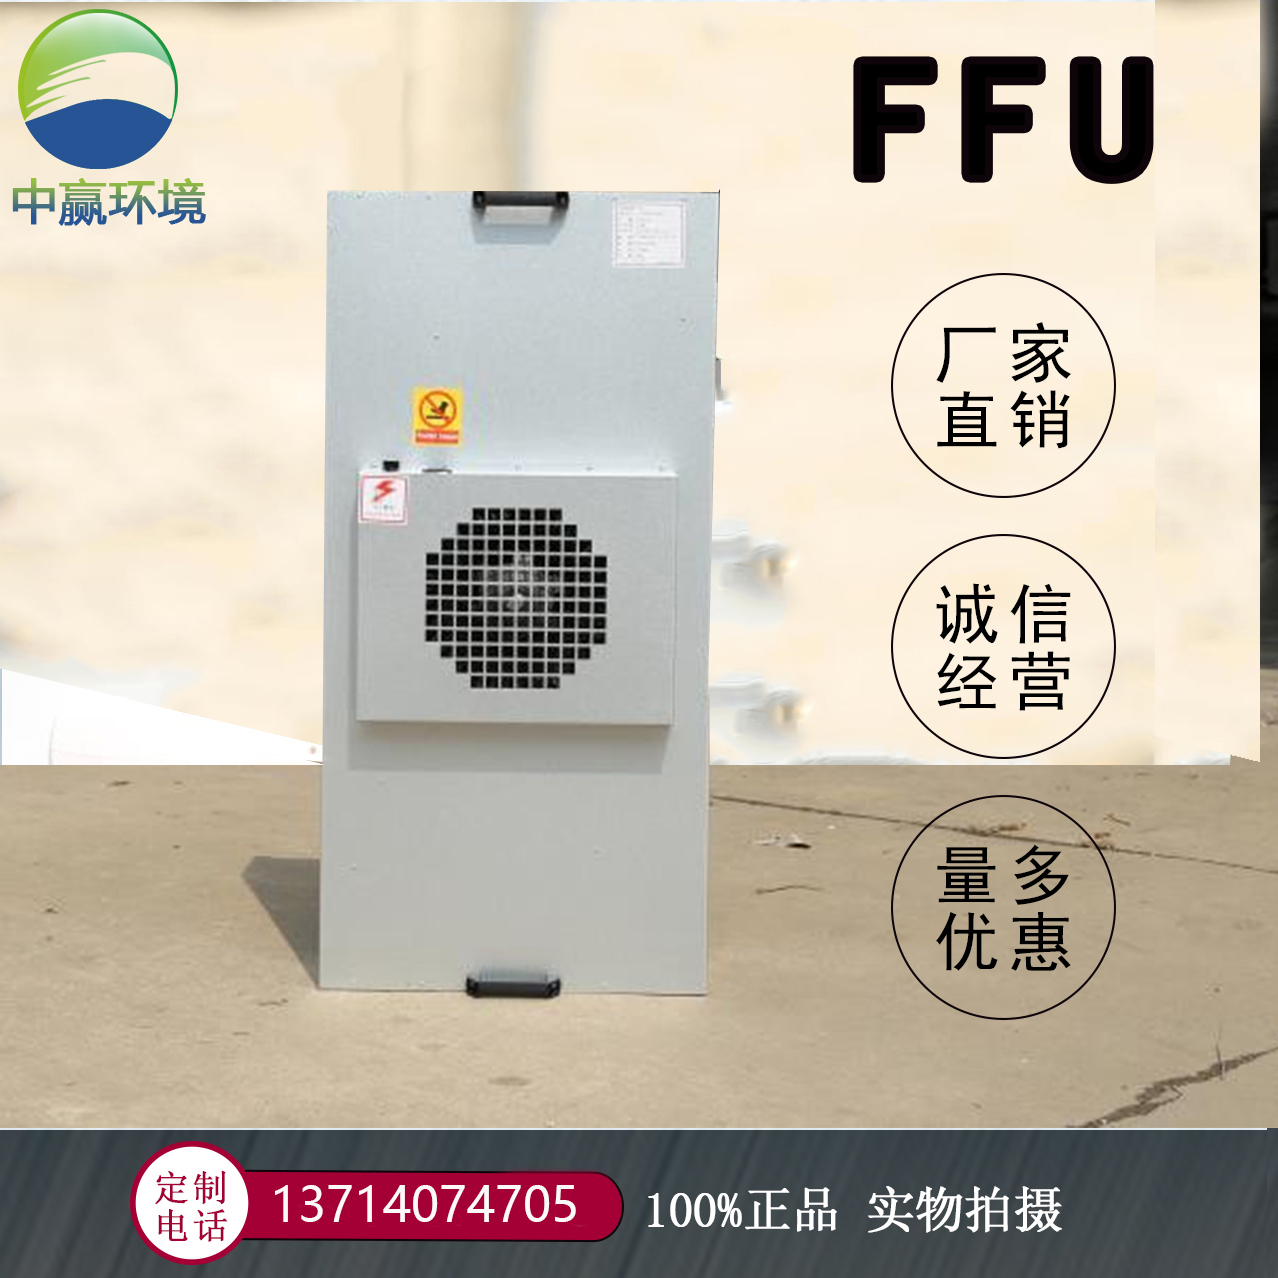 ffu风机过滤机组 空气净化成套设备 深圳厂家 抗腐蚀 锅炉房专用3